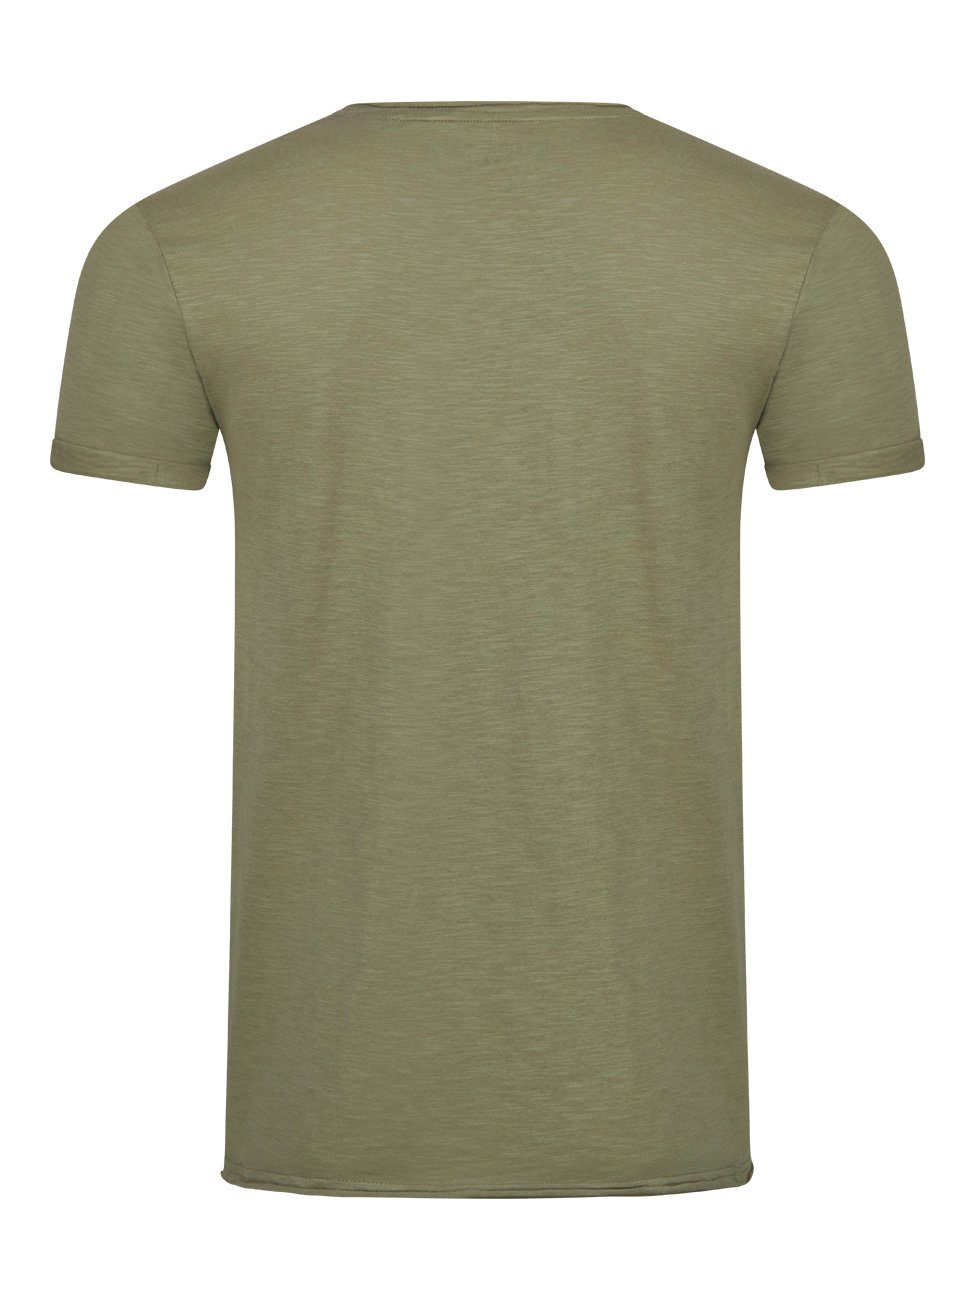 Rundhalsausschnitt mit Tee Regular Fit Kurzarm T-Shirt RIVLenny 100% Washed aus Olive Herren Basic Shirt riverso (1-tlg) Baumwolle Shirt